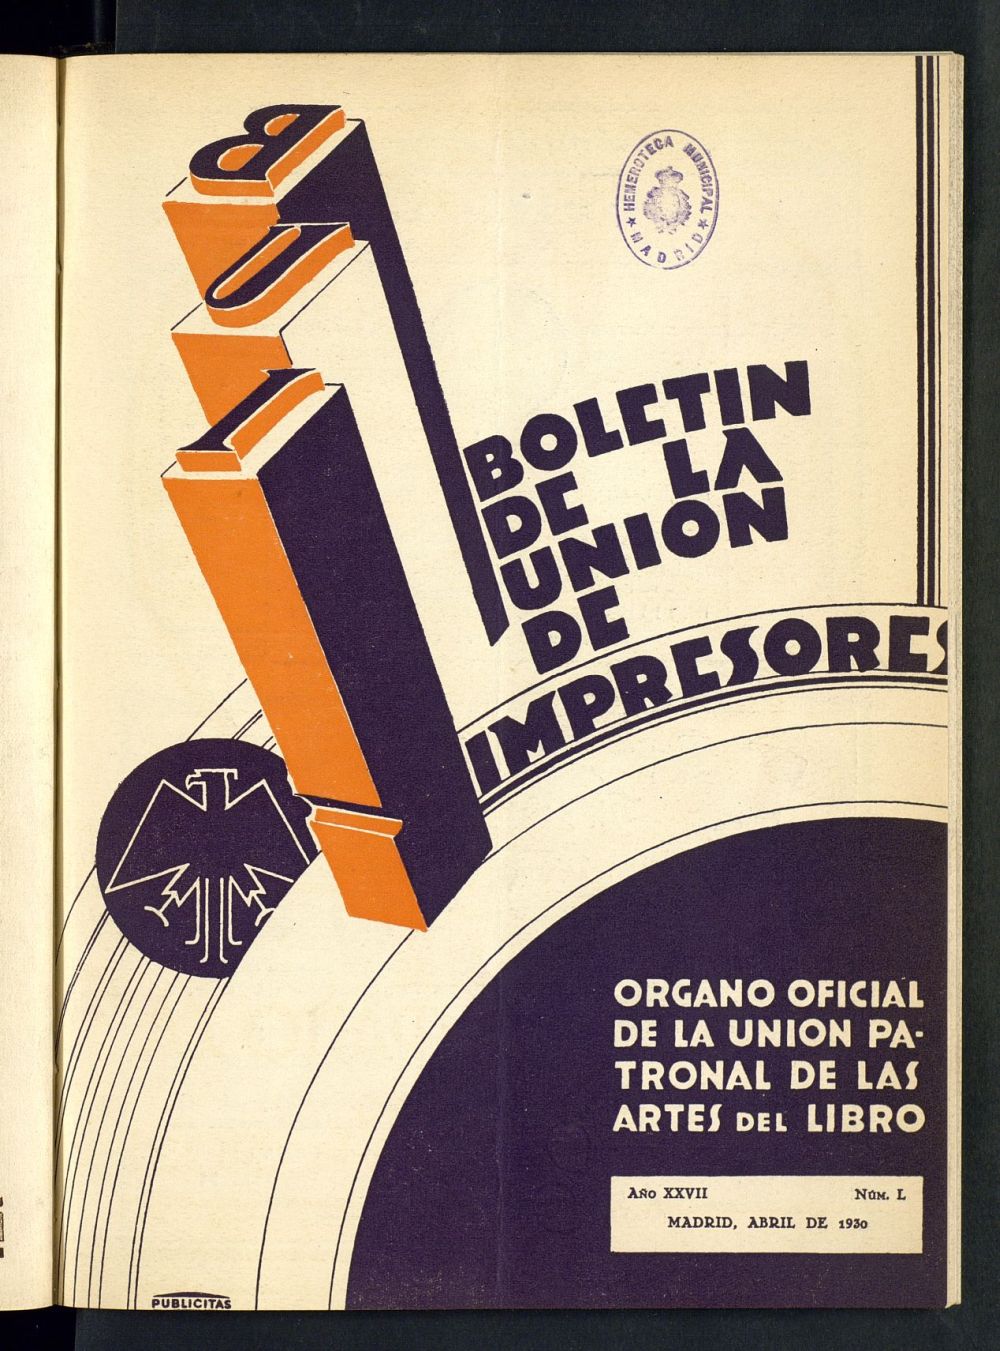 Boletn de la unin de impresores : rgano de la unin patronal de las artes del libro de abril de 1930